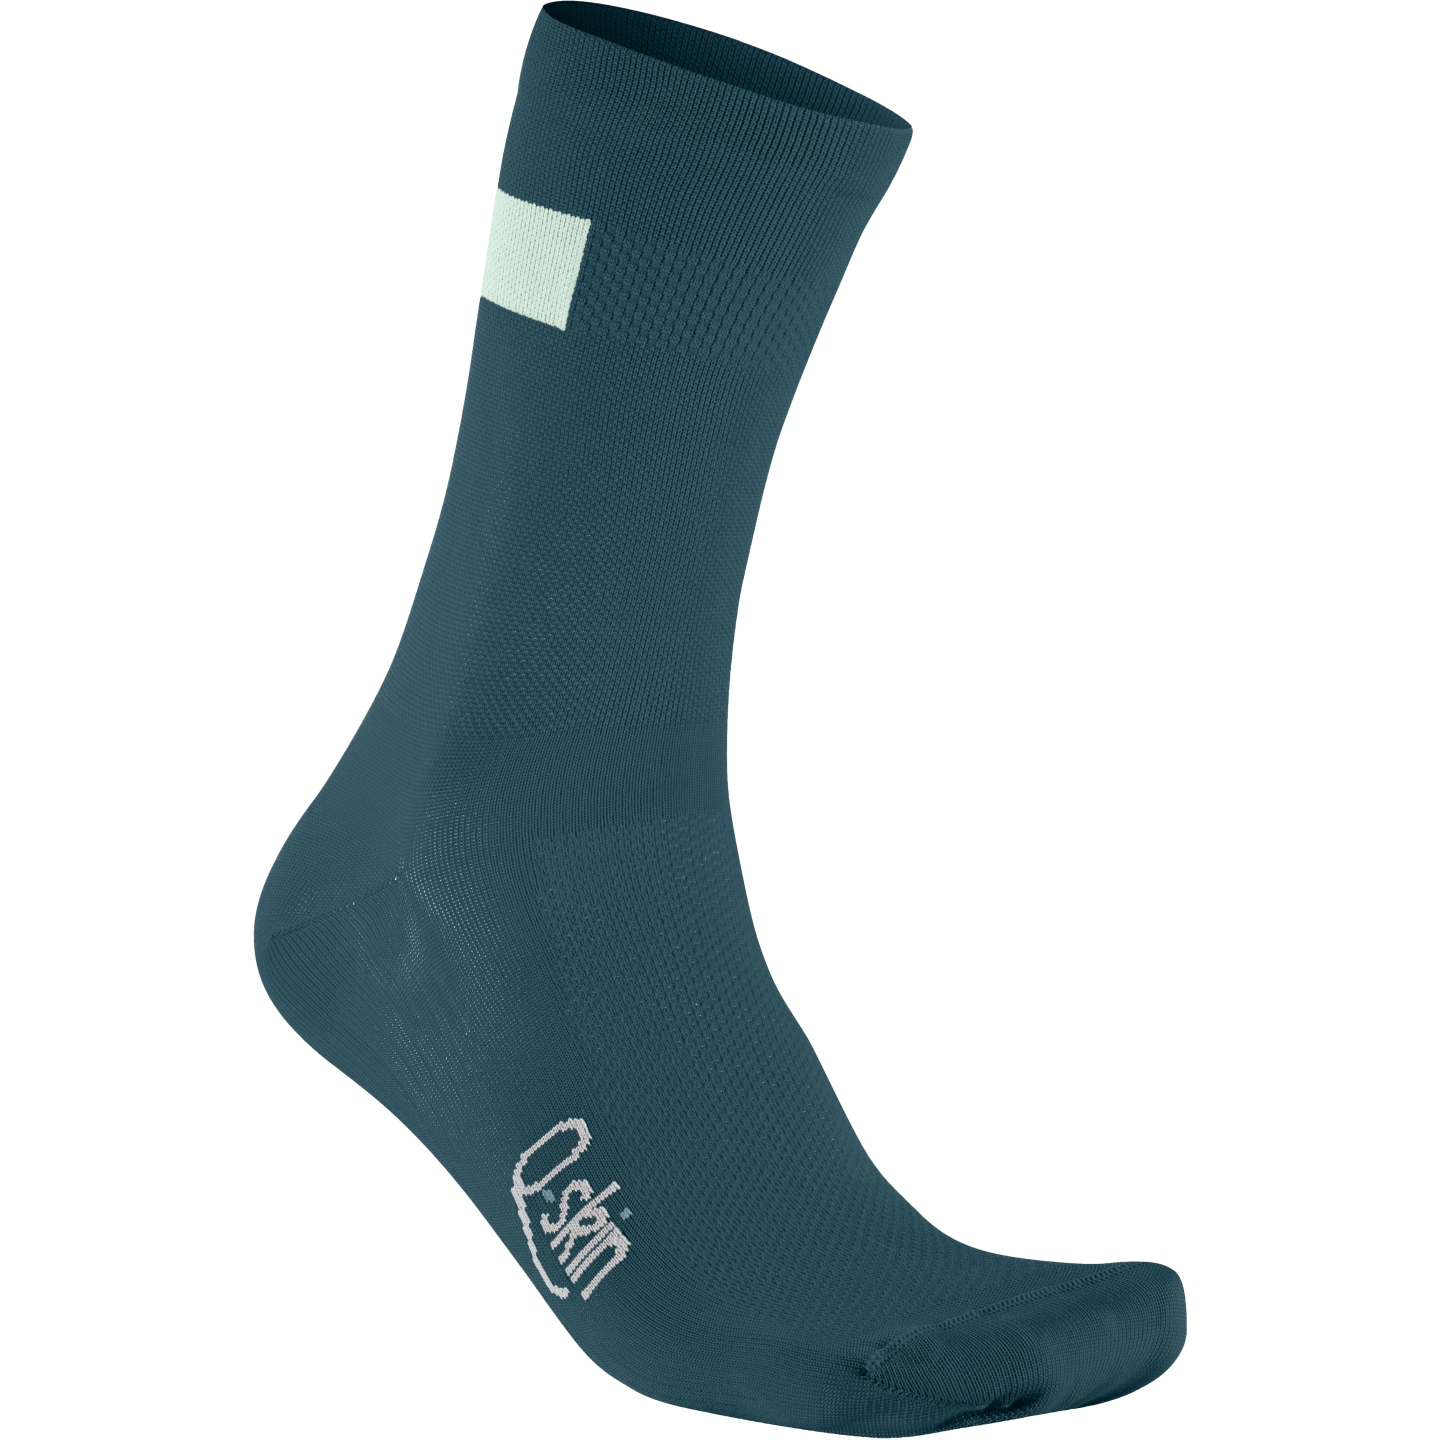 Produktbild von Sportful Snap Socken Damen - 374 Shade Spruce